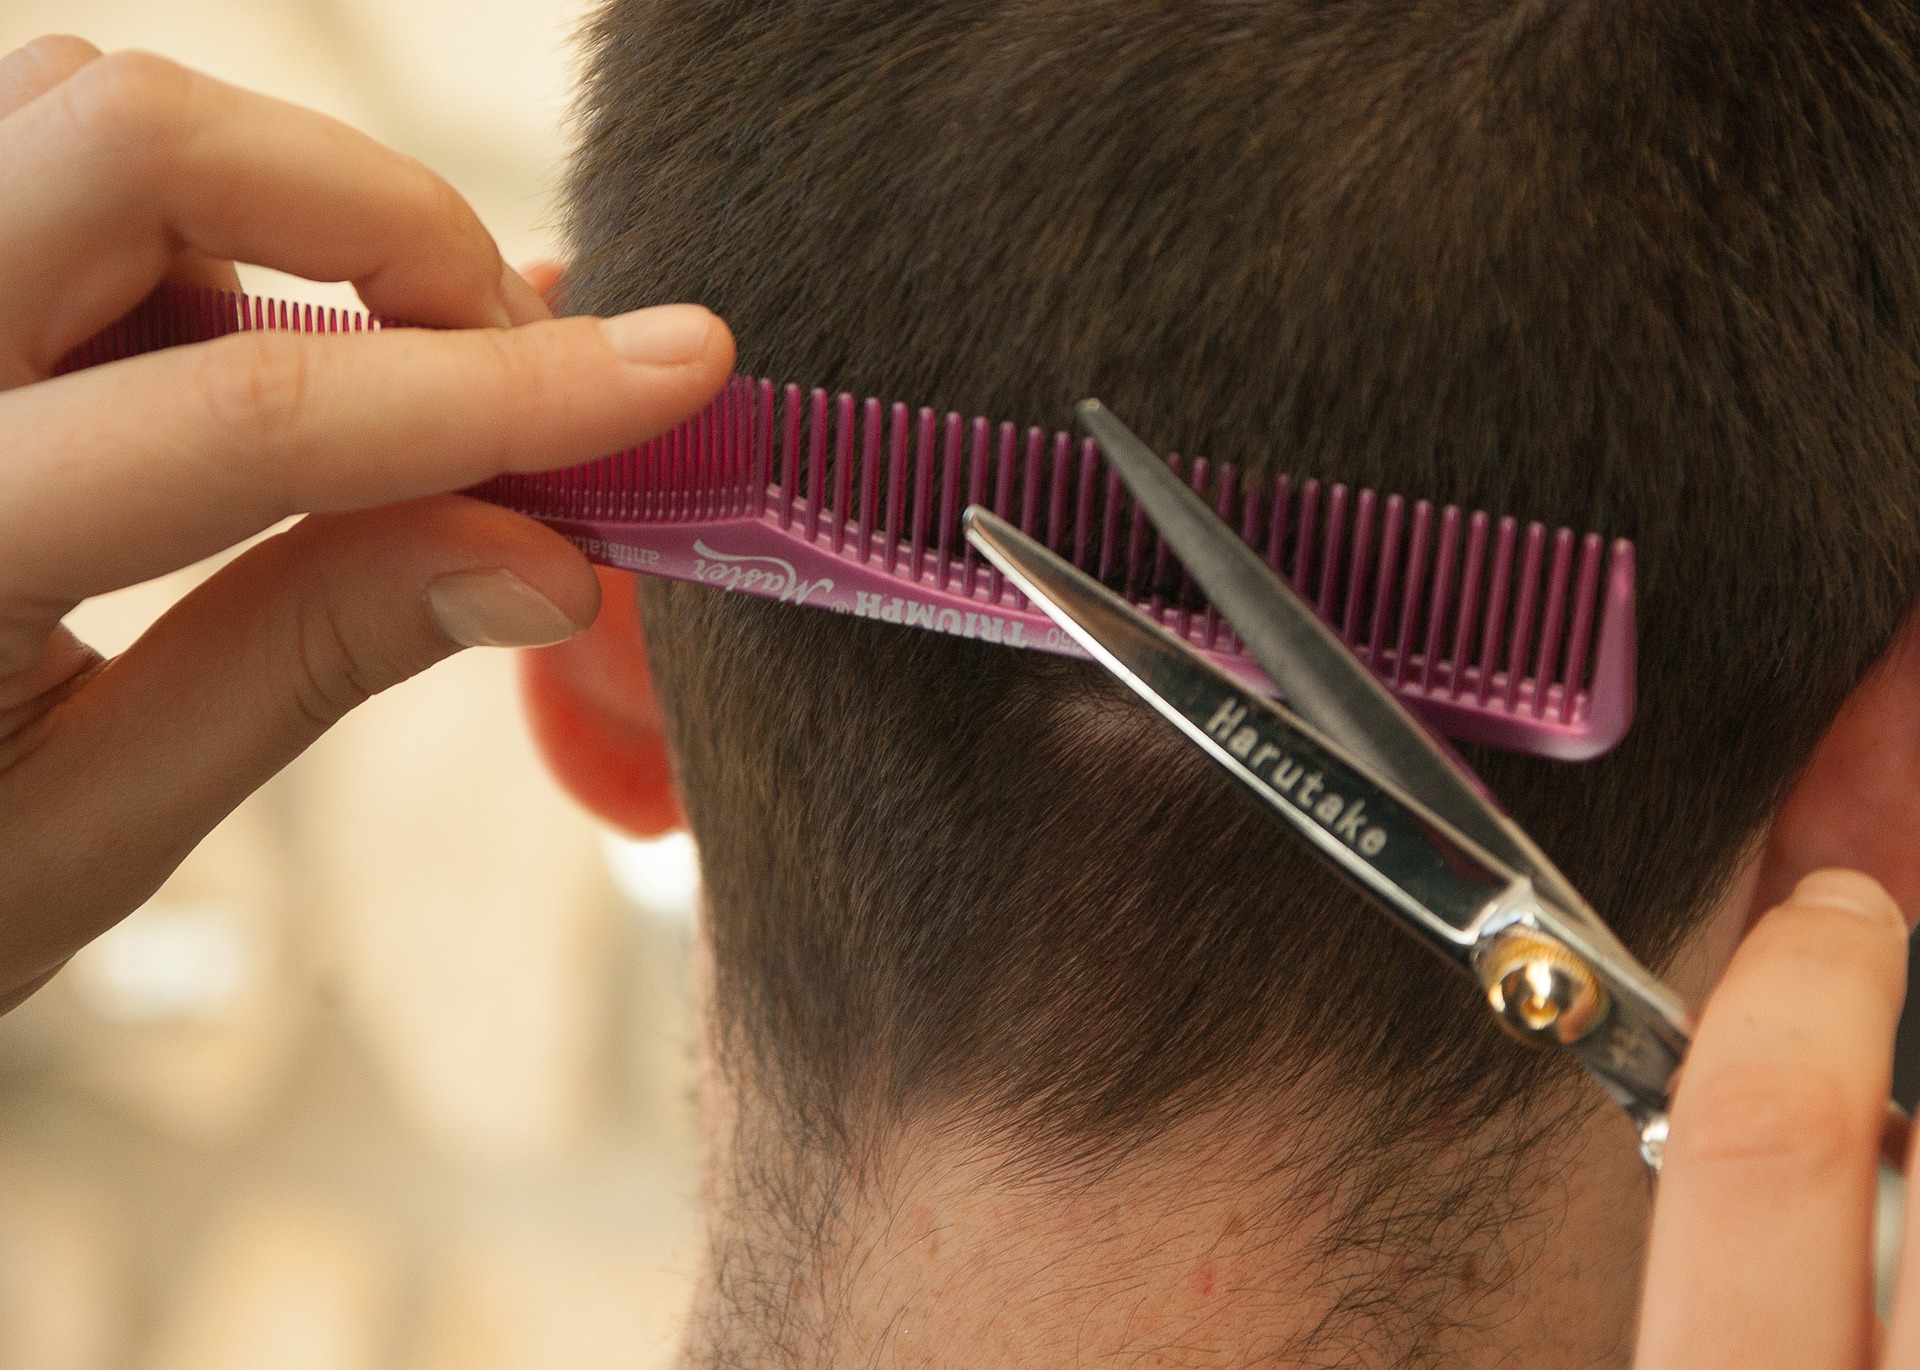 Un parrucchiere taglia i capelli e applica le norme sulla materia di igiene e sicurezza sul lavoro.